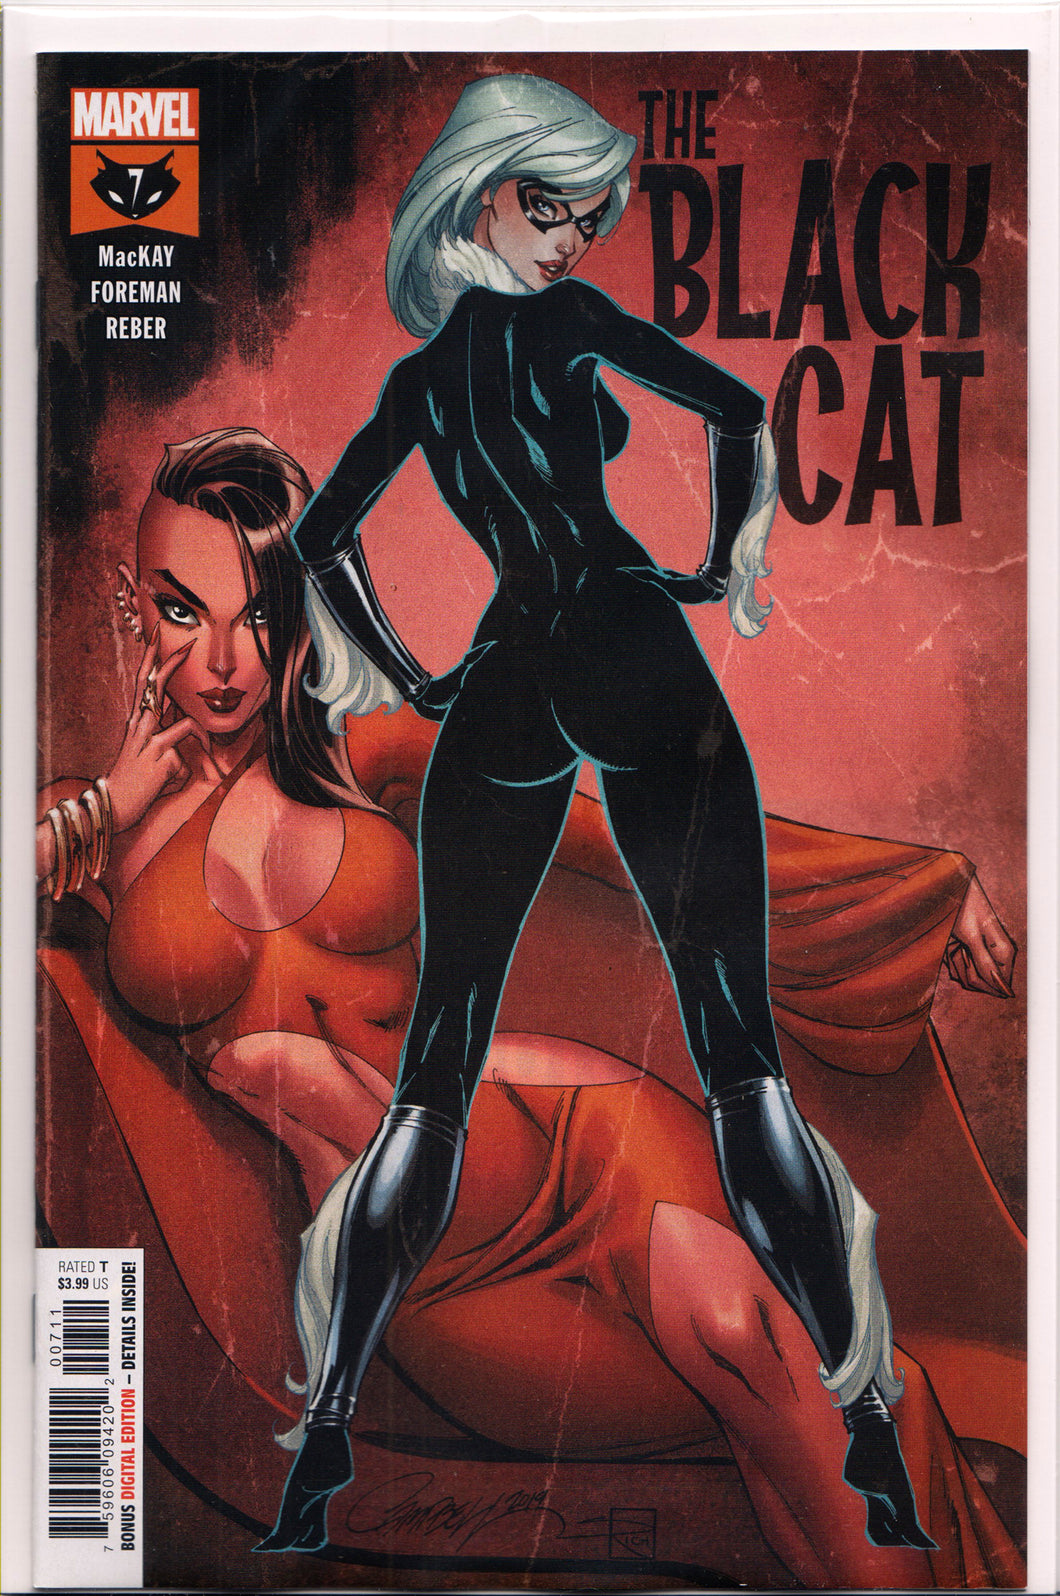 BLACK CAT #7 (J. SCOTT CAMPBELL VARIANT) COMIC BOOK ~ Marvel Comics